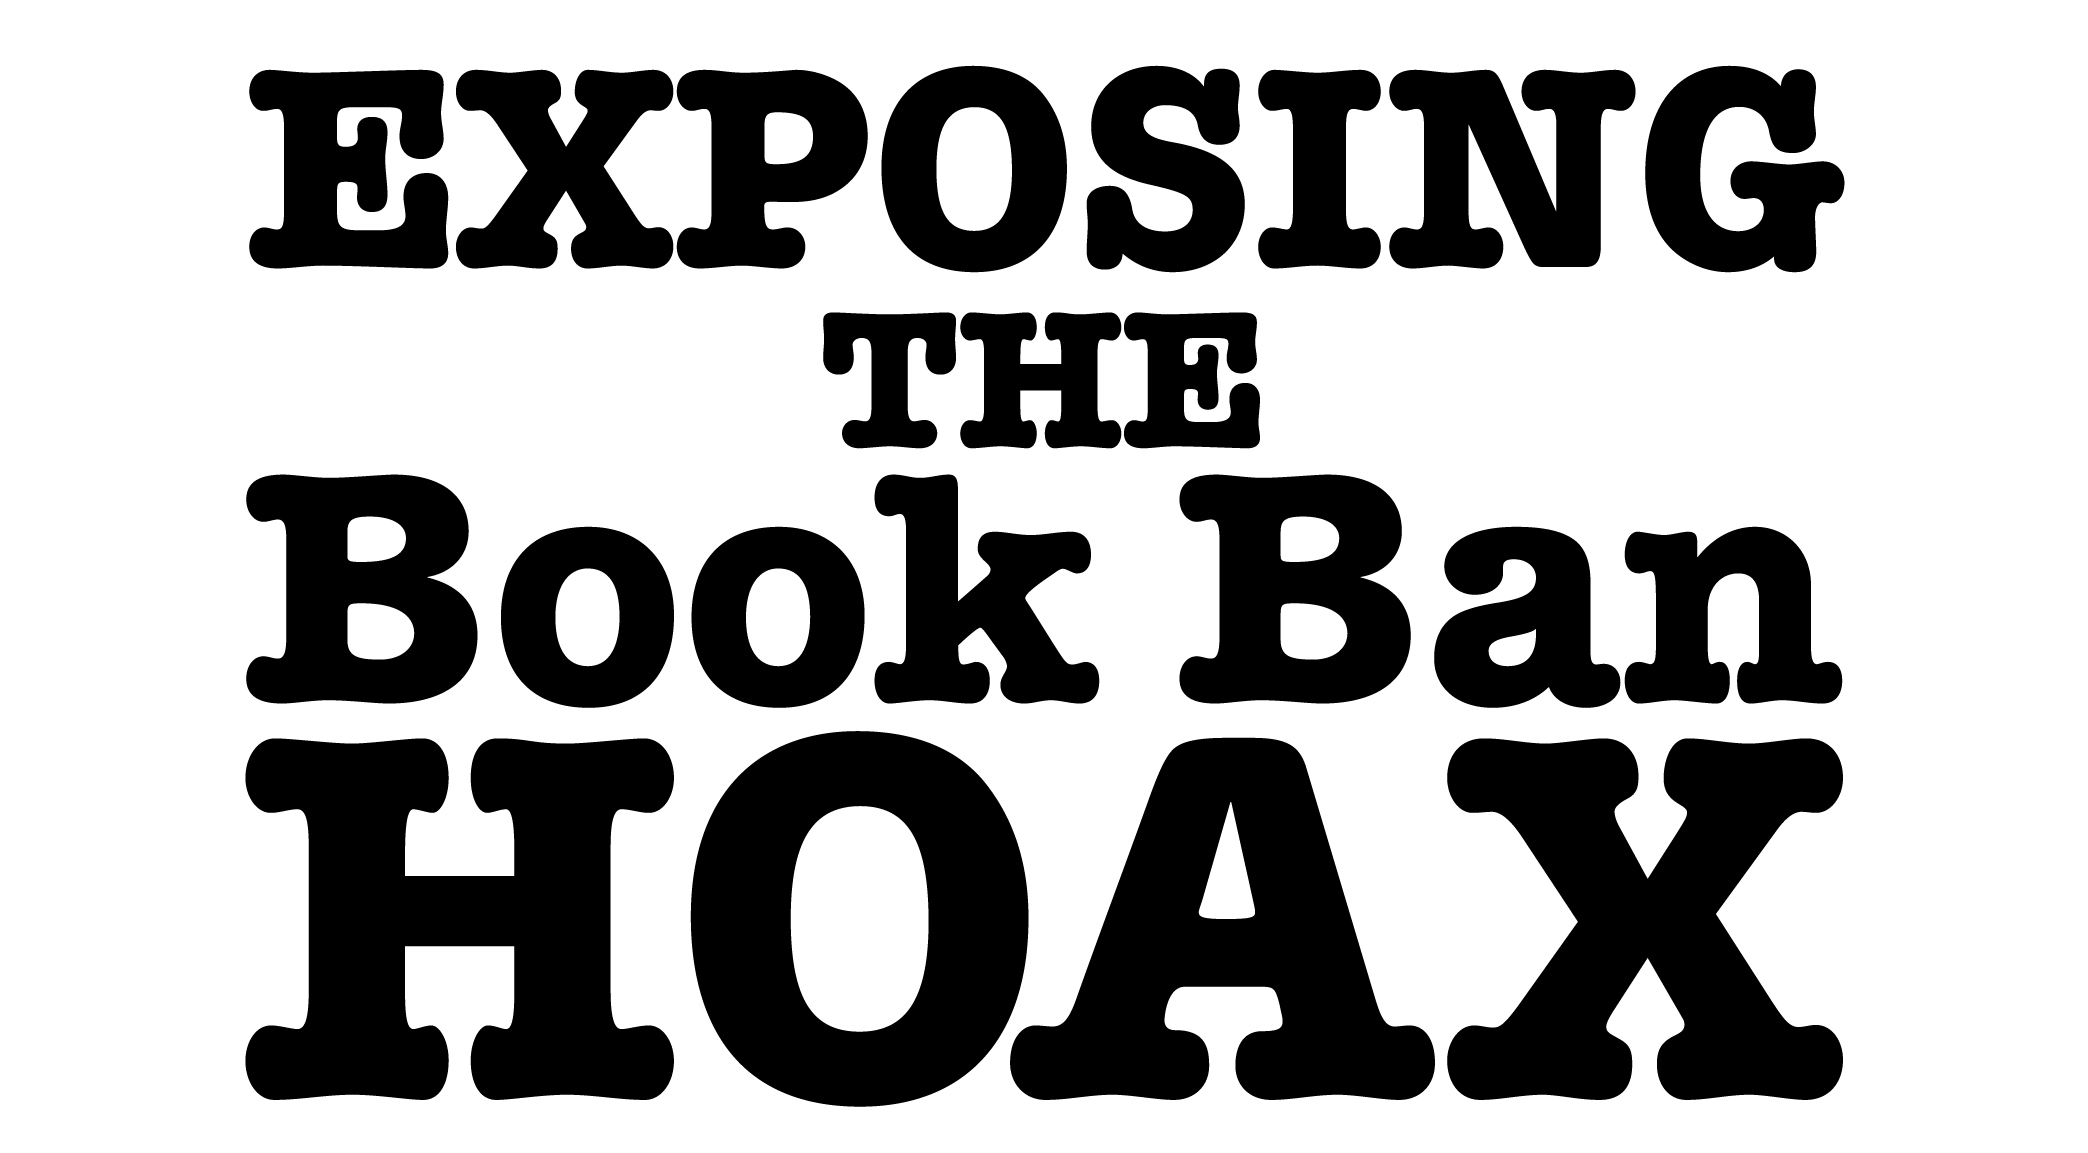 Retro Porn Banned South American - Governor Ron DeSantis Debunks Book Ban Hoax